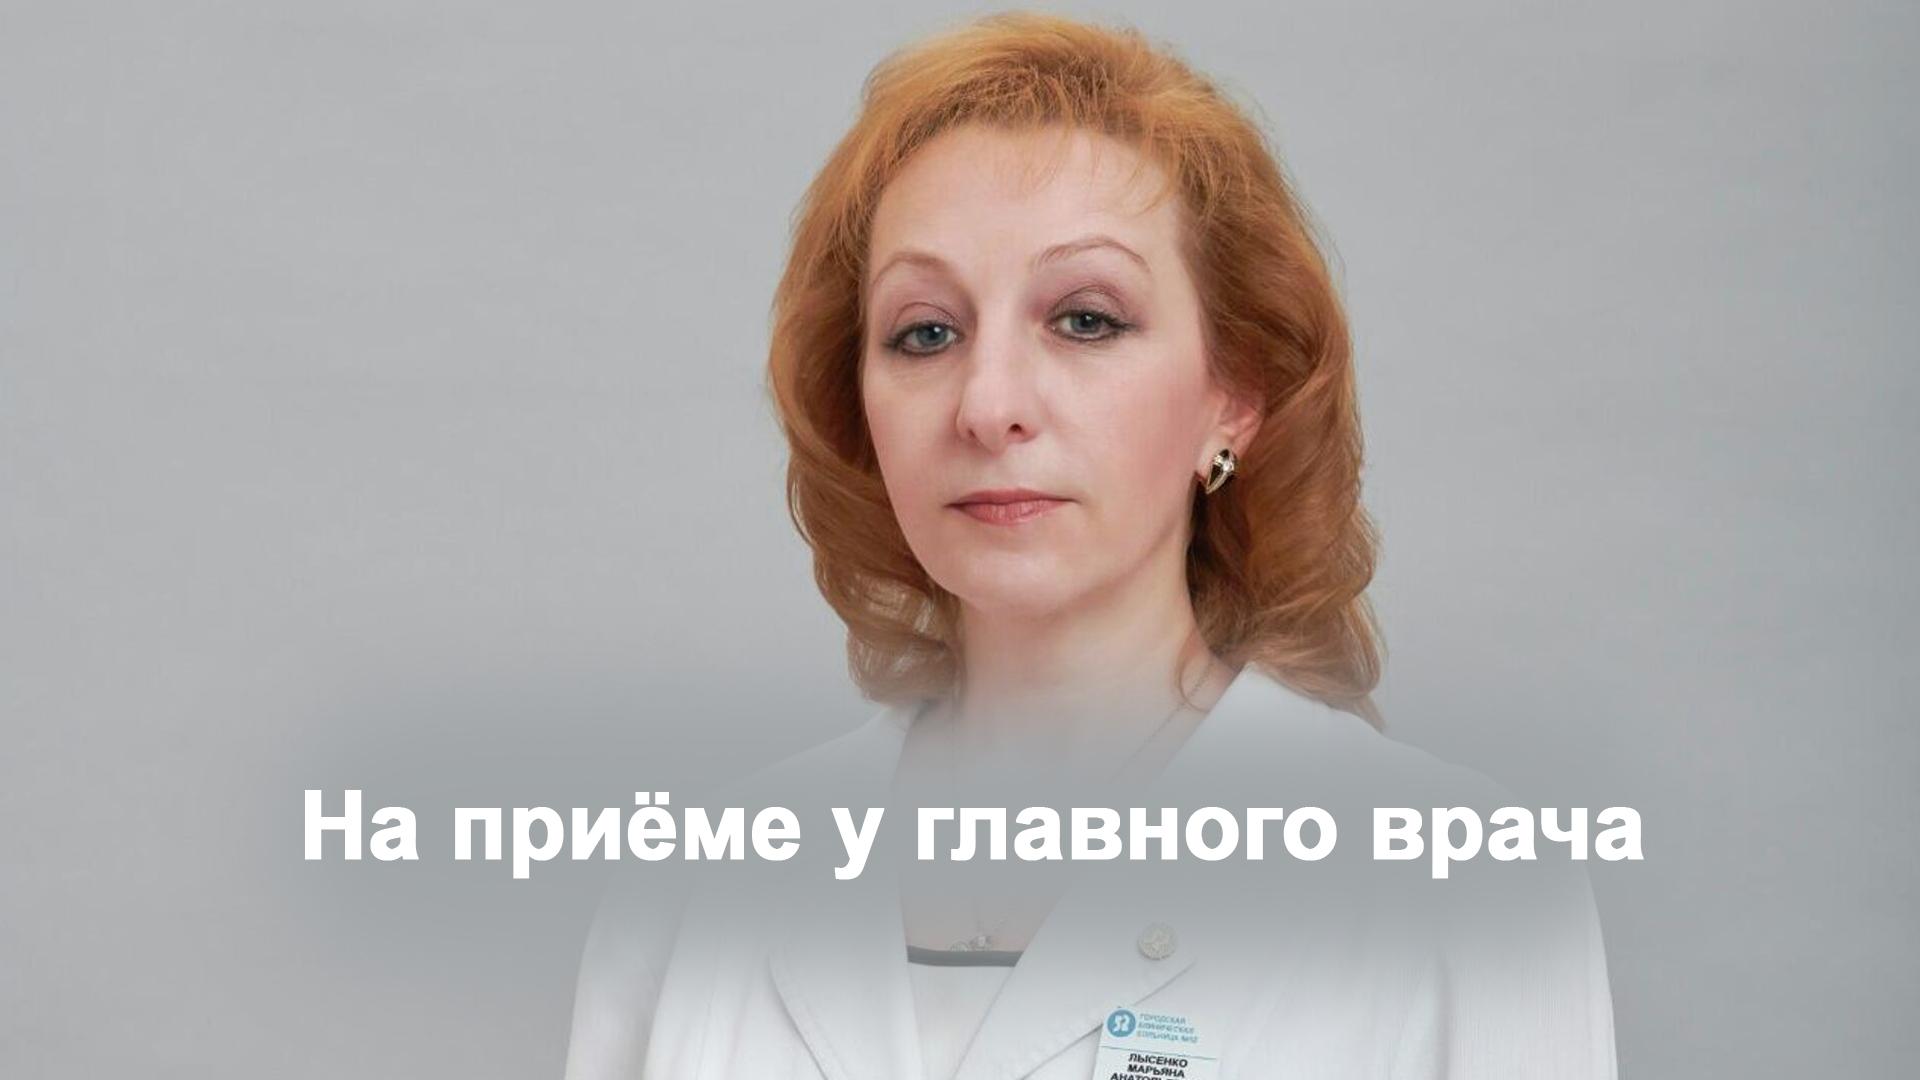 Лысенко главный врач 52